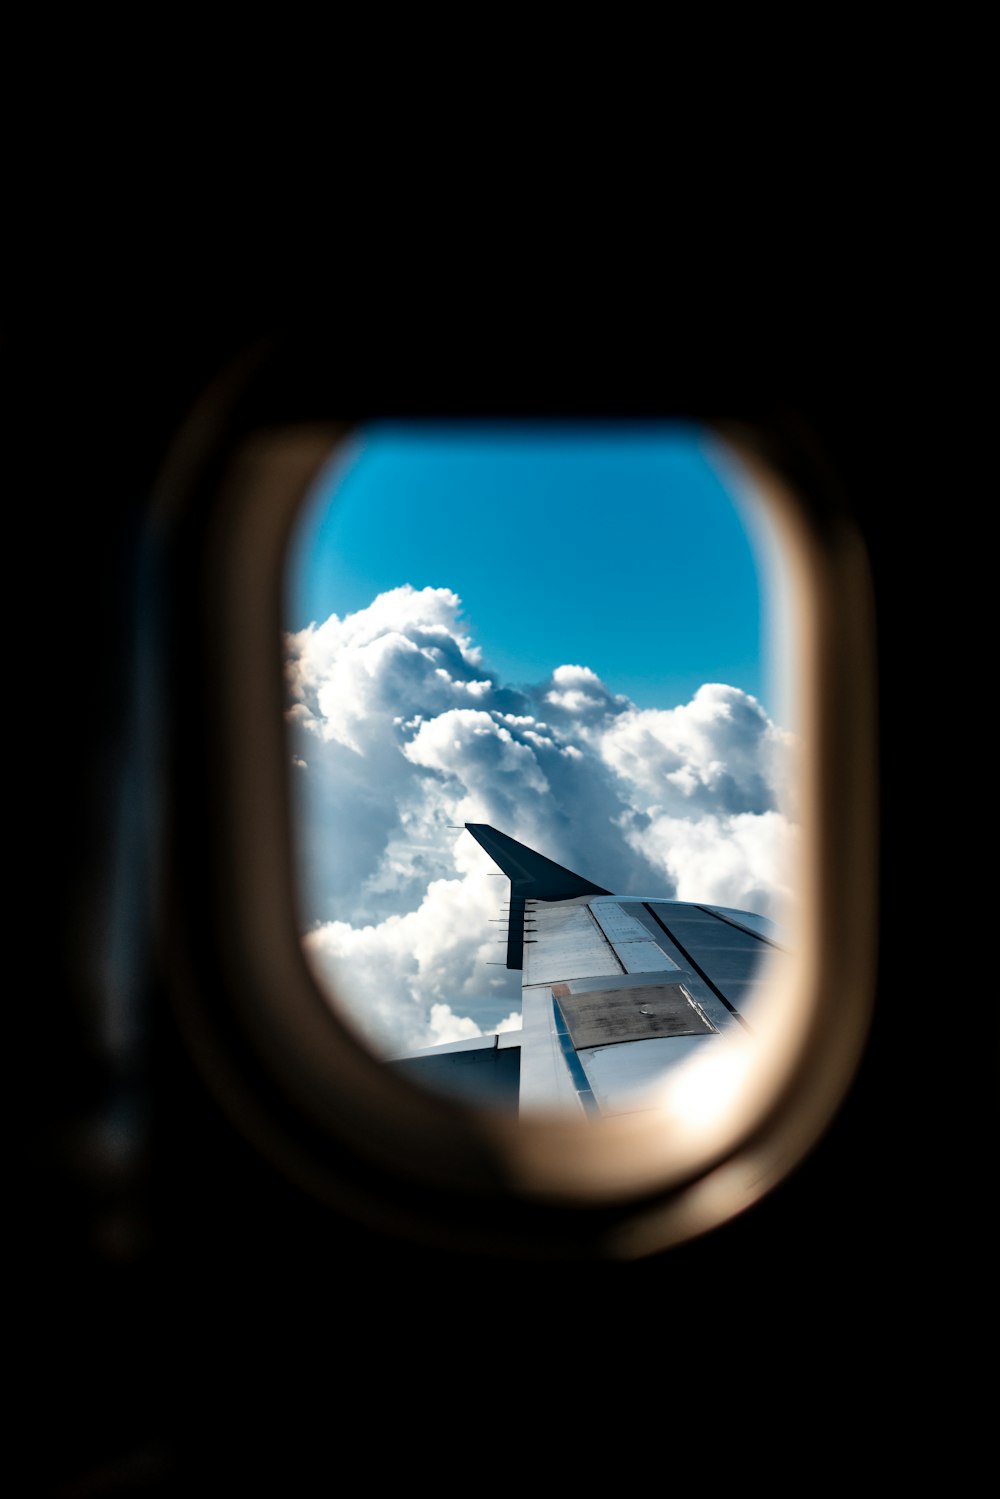 ala de avión bajo nubes blancas durante el día